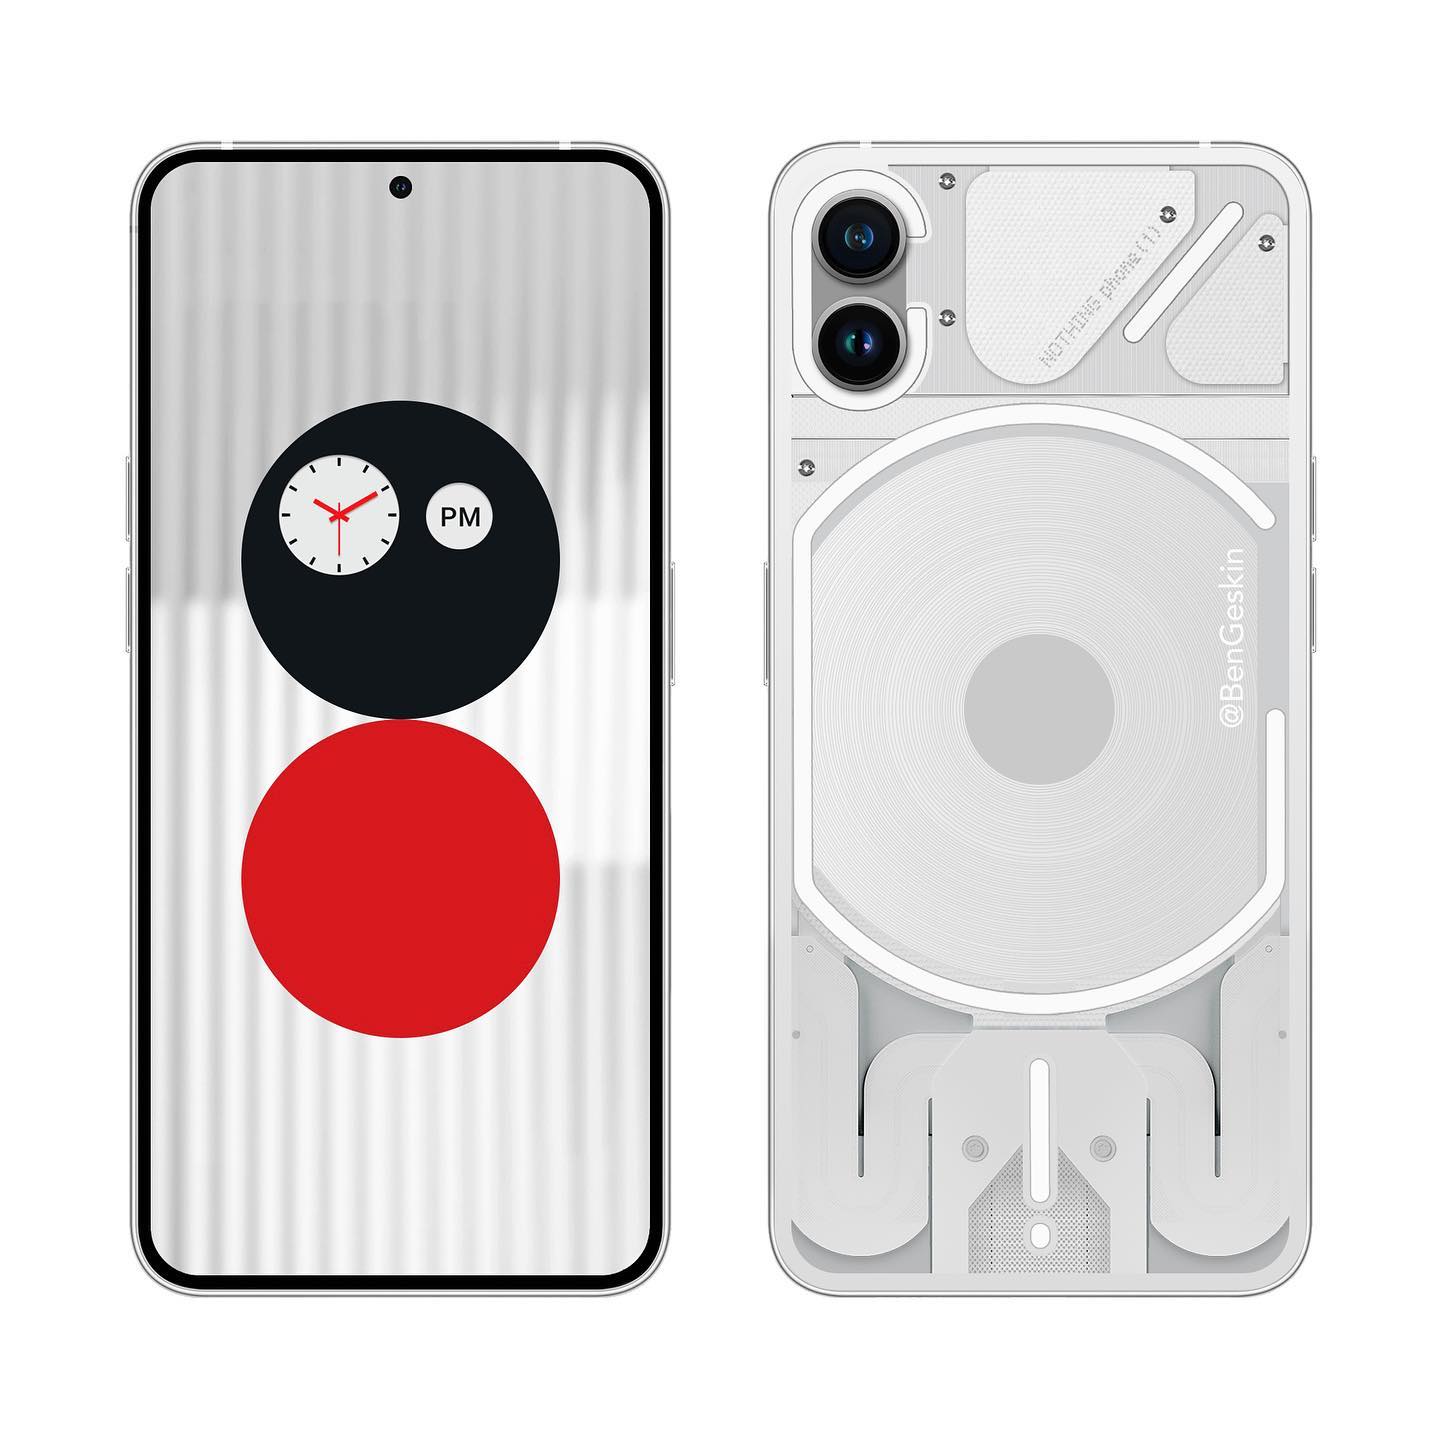 Lộ diện smartphone mới của cựu sáng lập OnePlus: Nothing Phone (1) - Hình 5